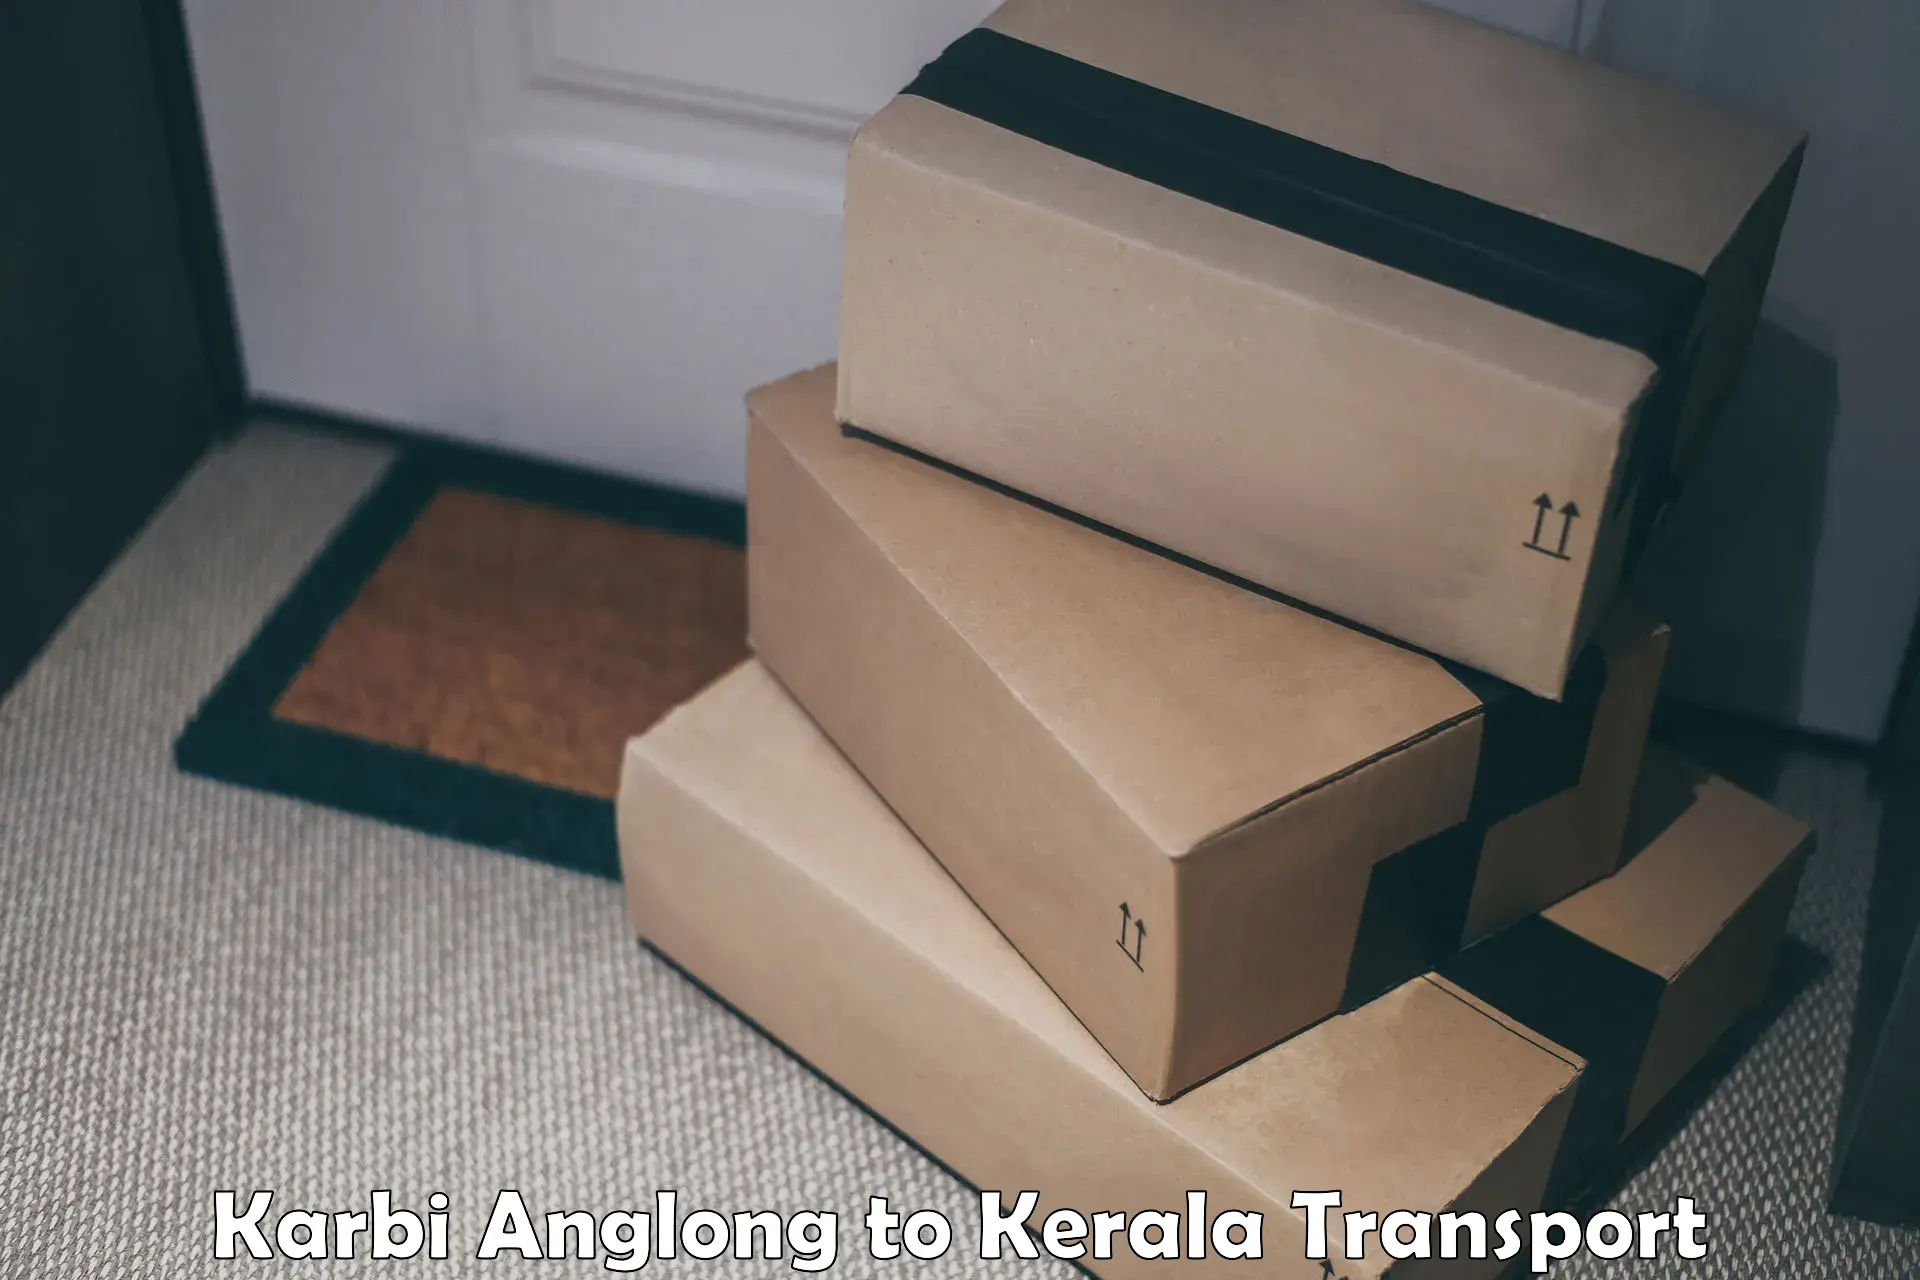 Cargo transportation services Karbi Anglong to Manthuka